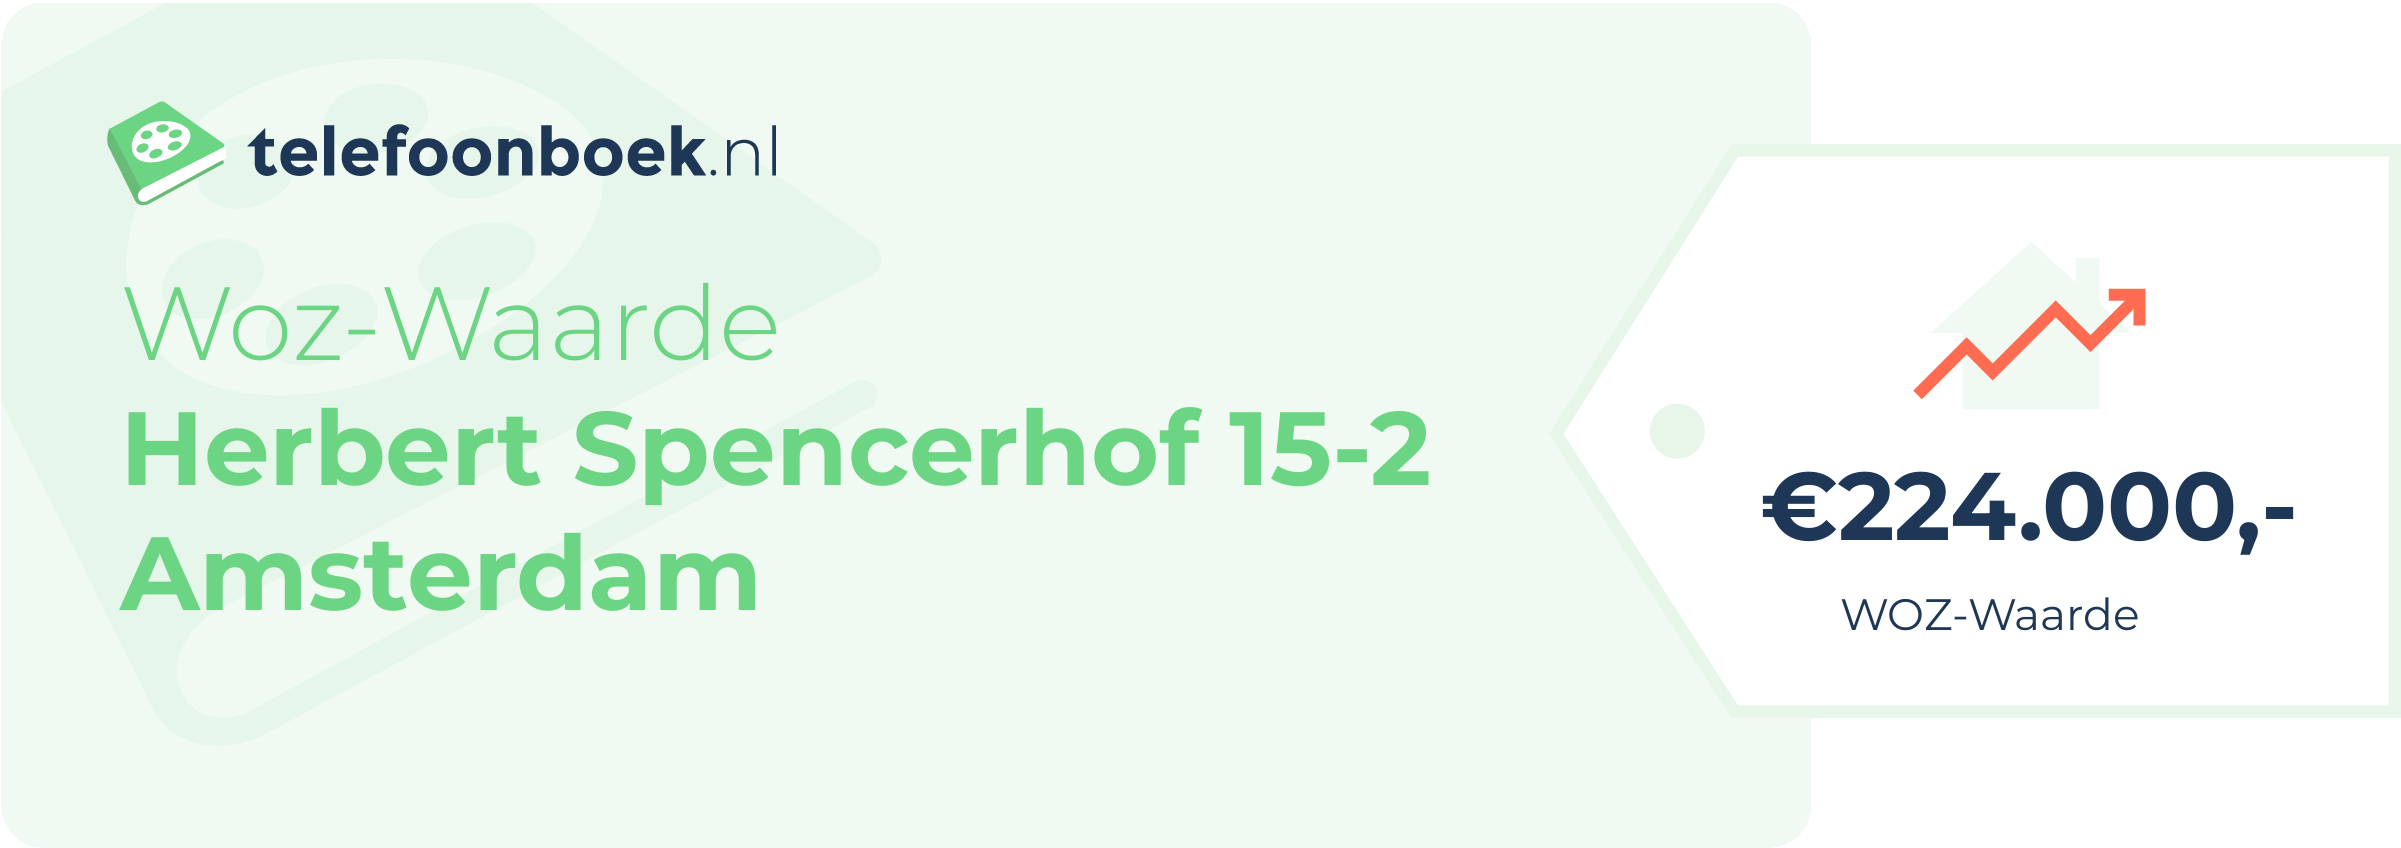 WOZ-waarde Herbert Spencerhof 15-2 Amsterdam